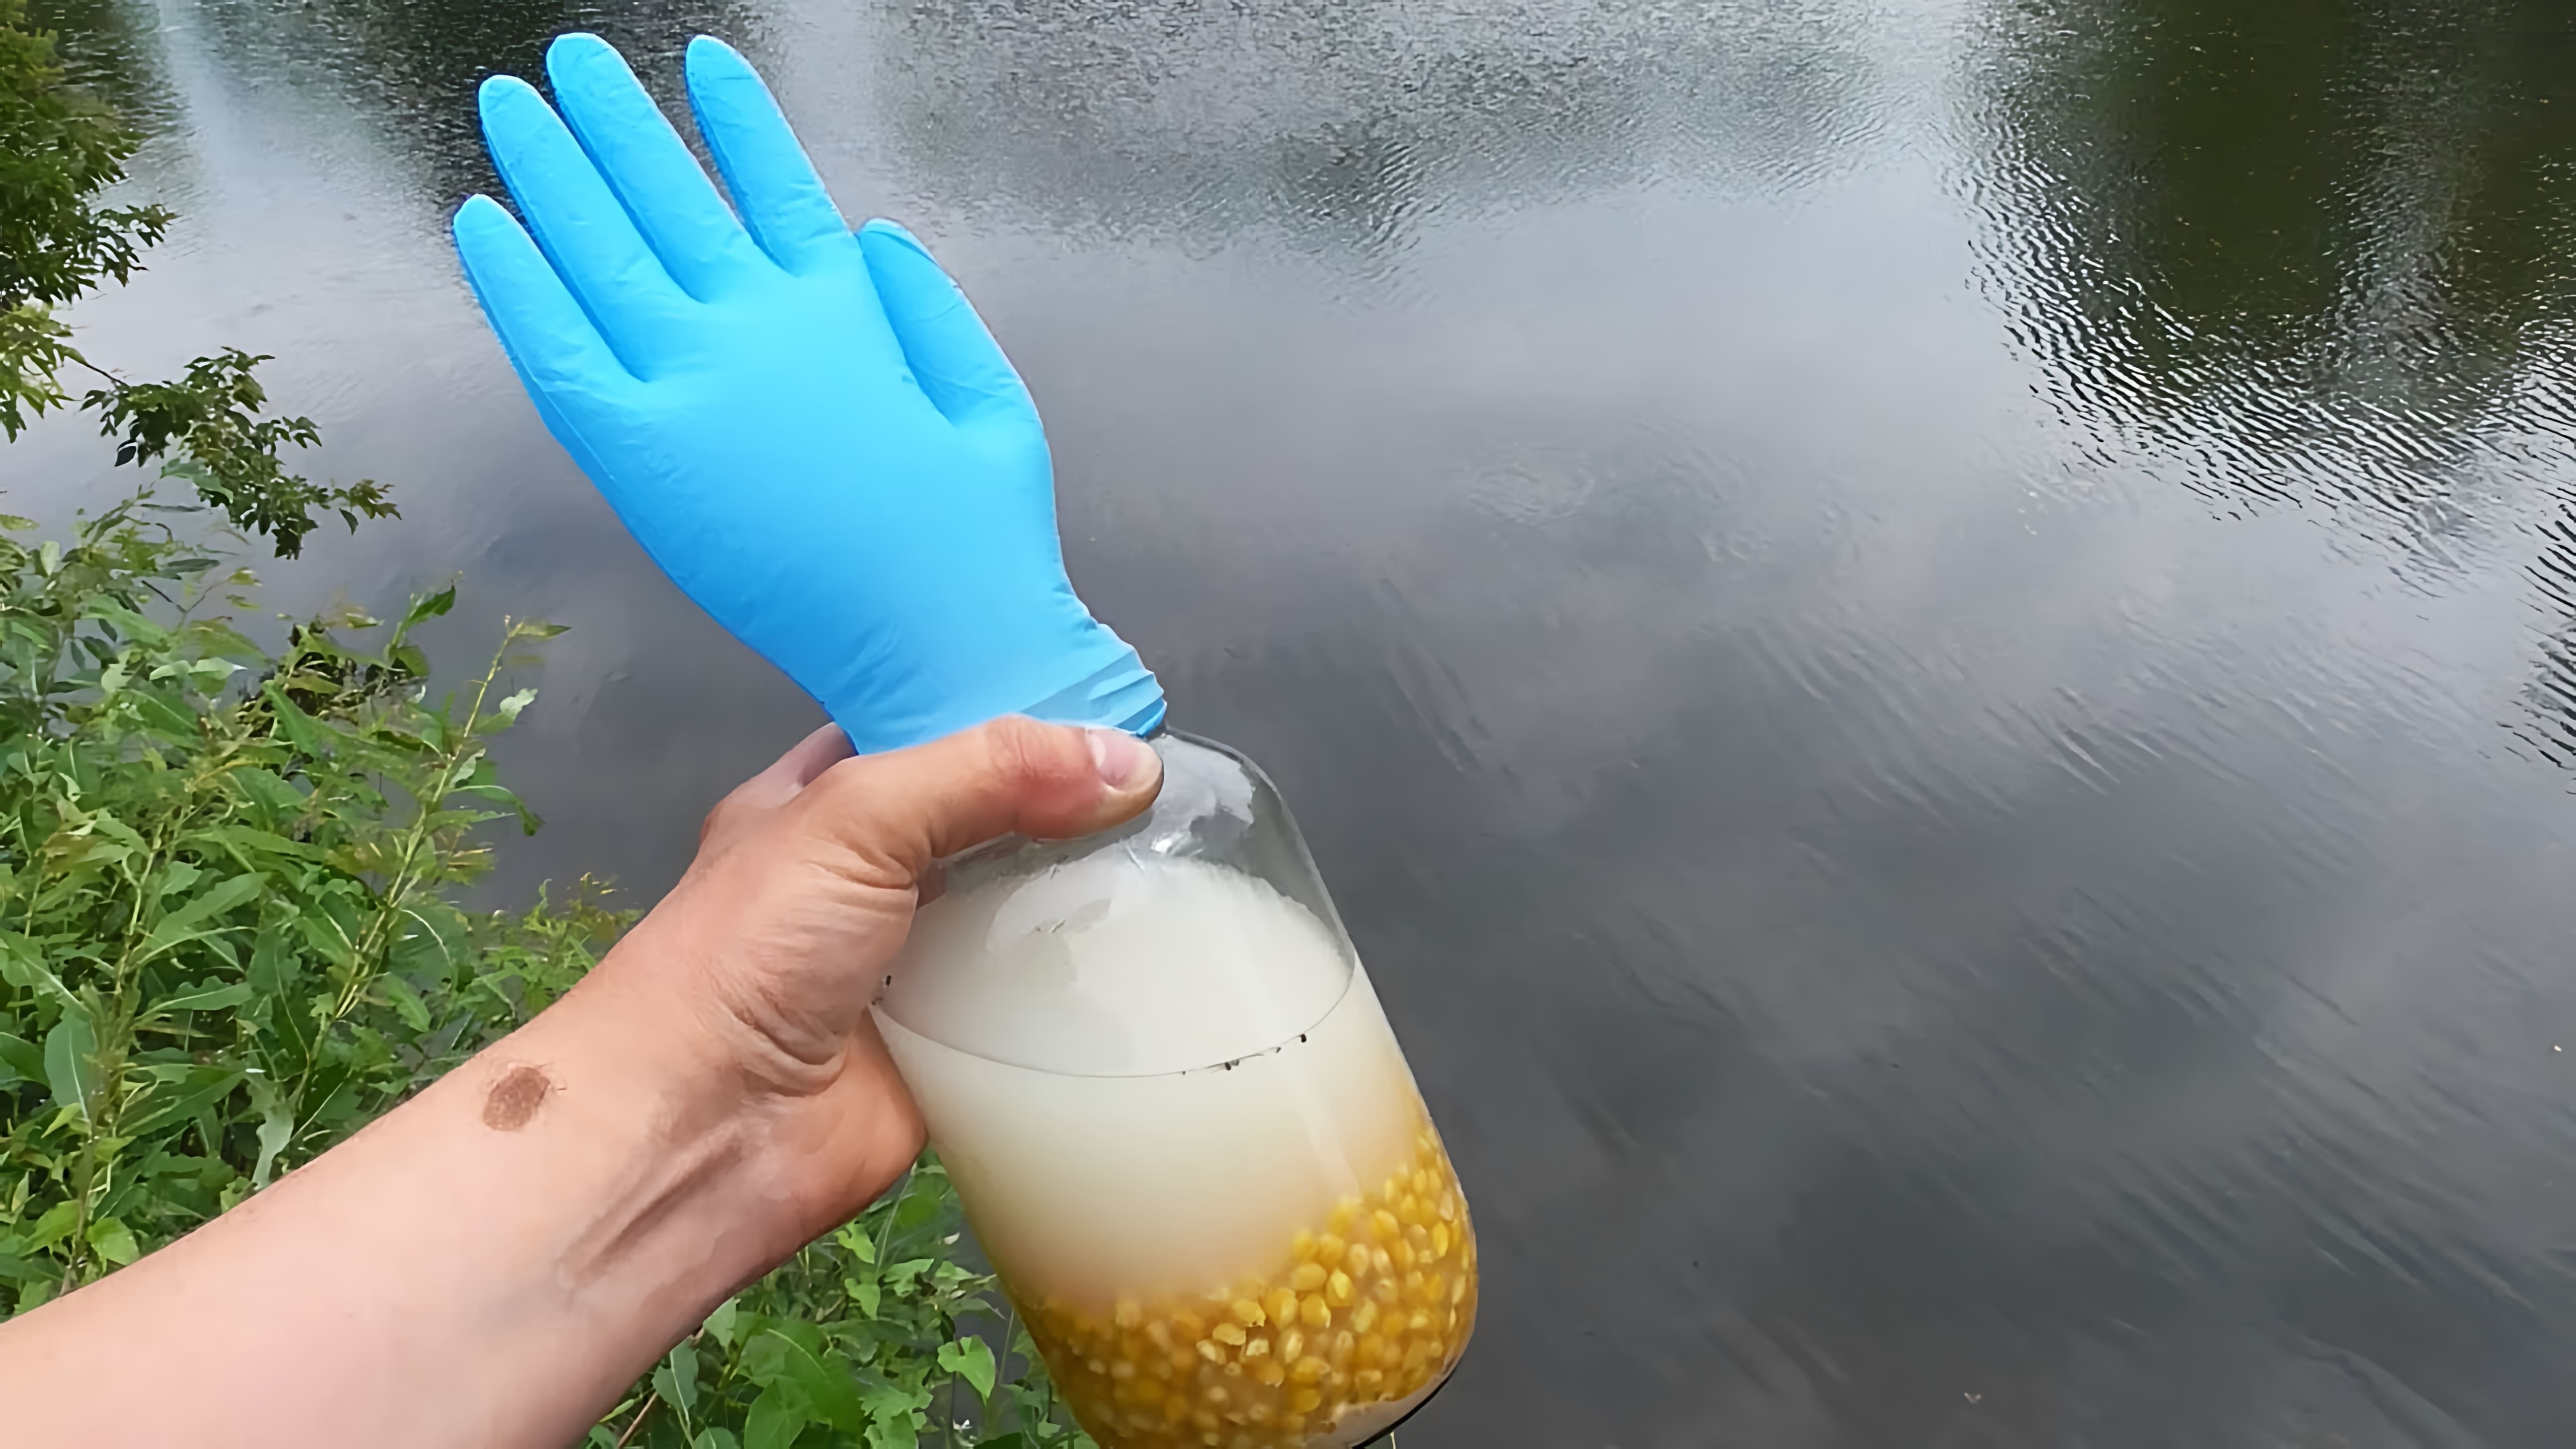 В этом видео демонстрируется процесс приготовления ферментированной кукурузы, которая затем проверяется под водой